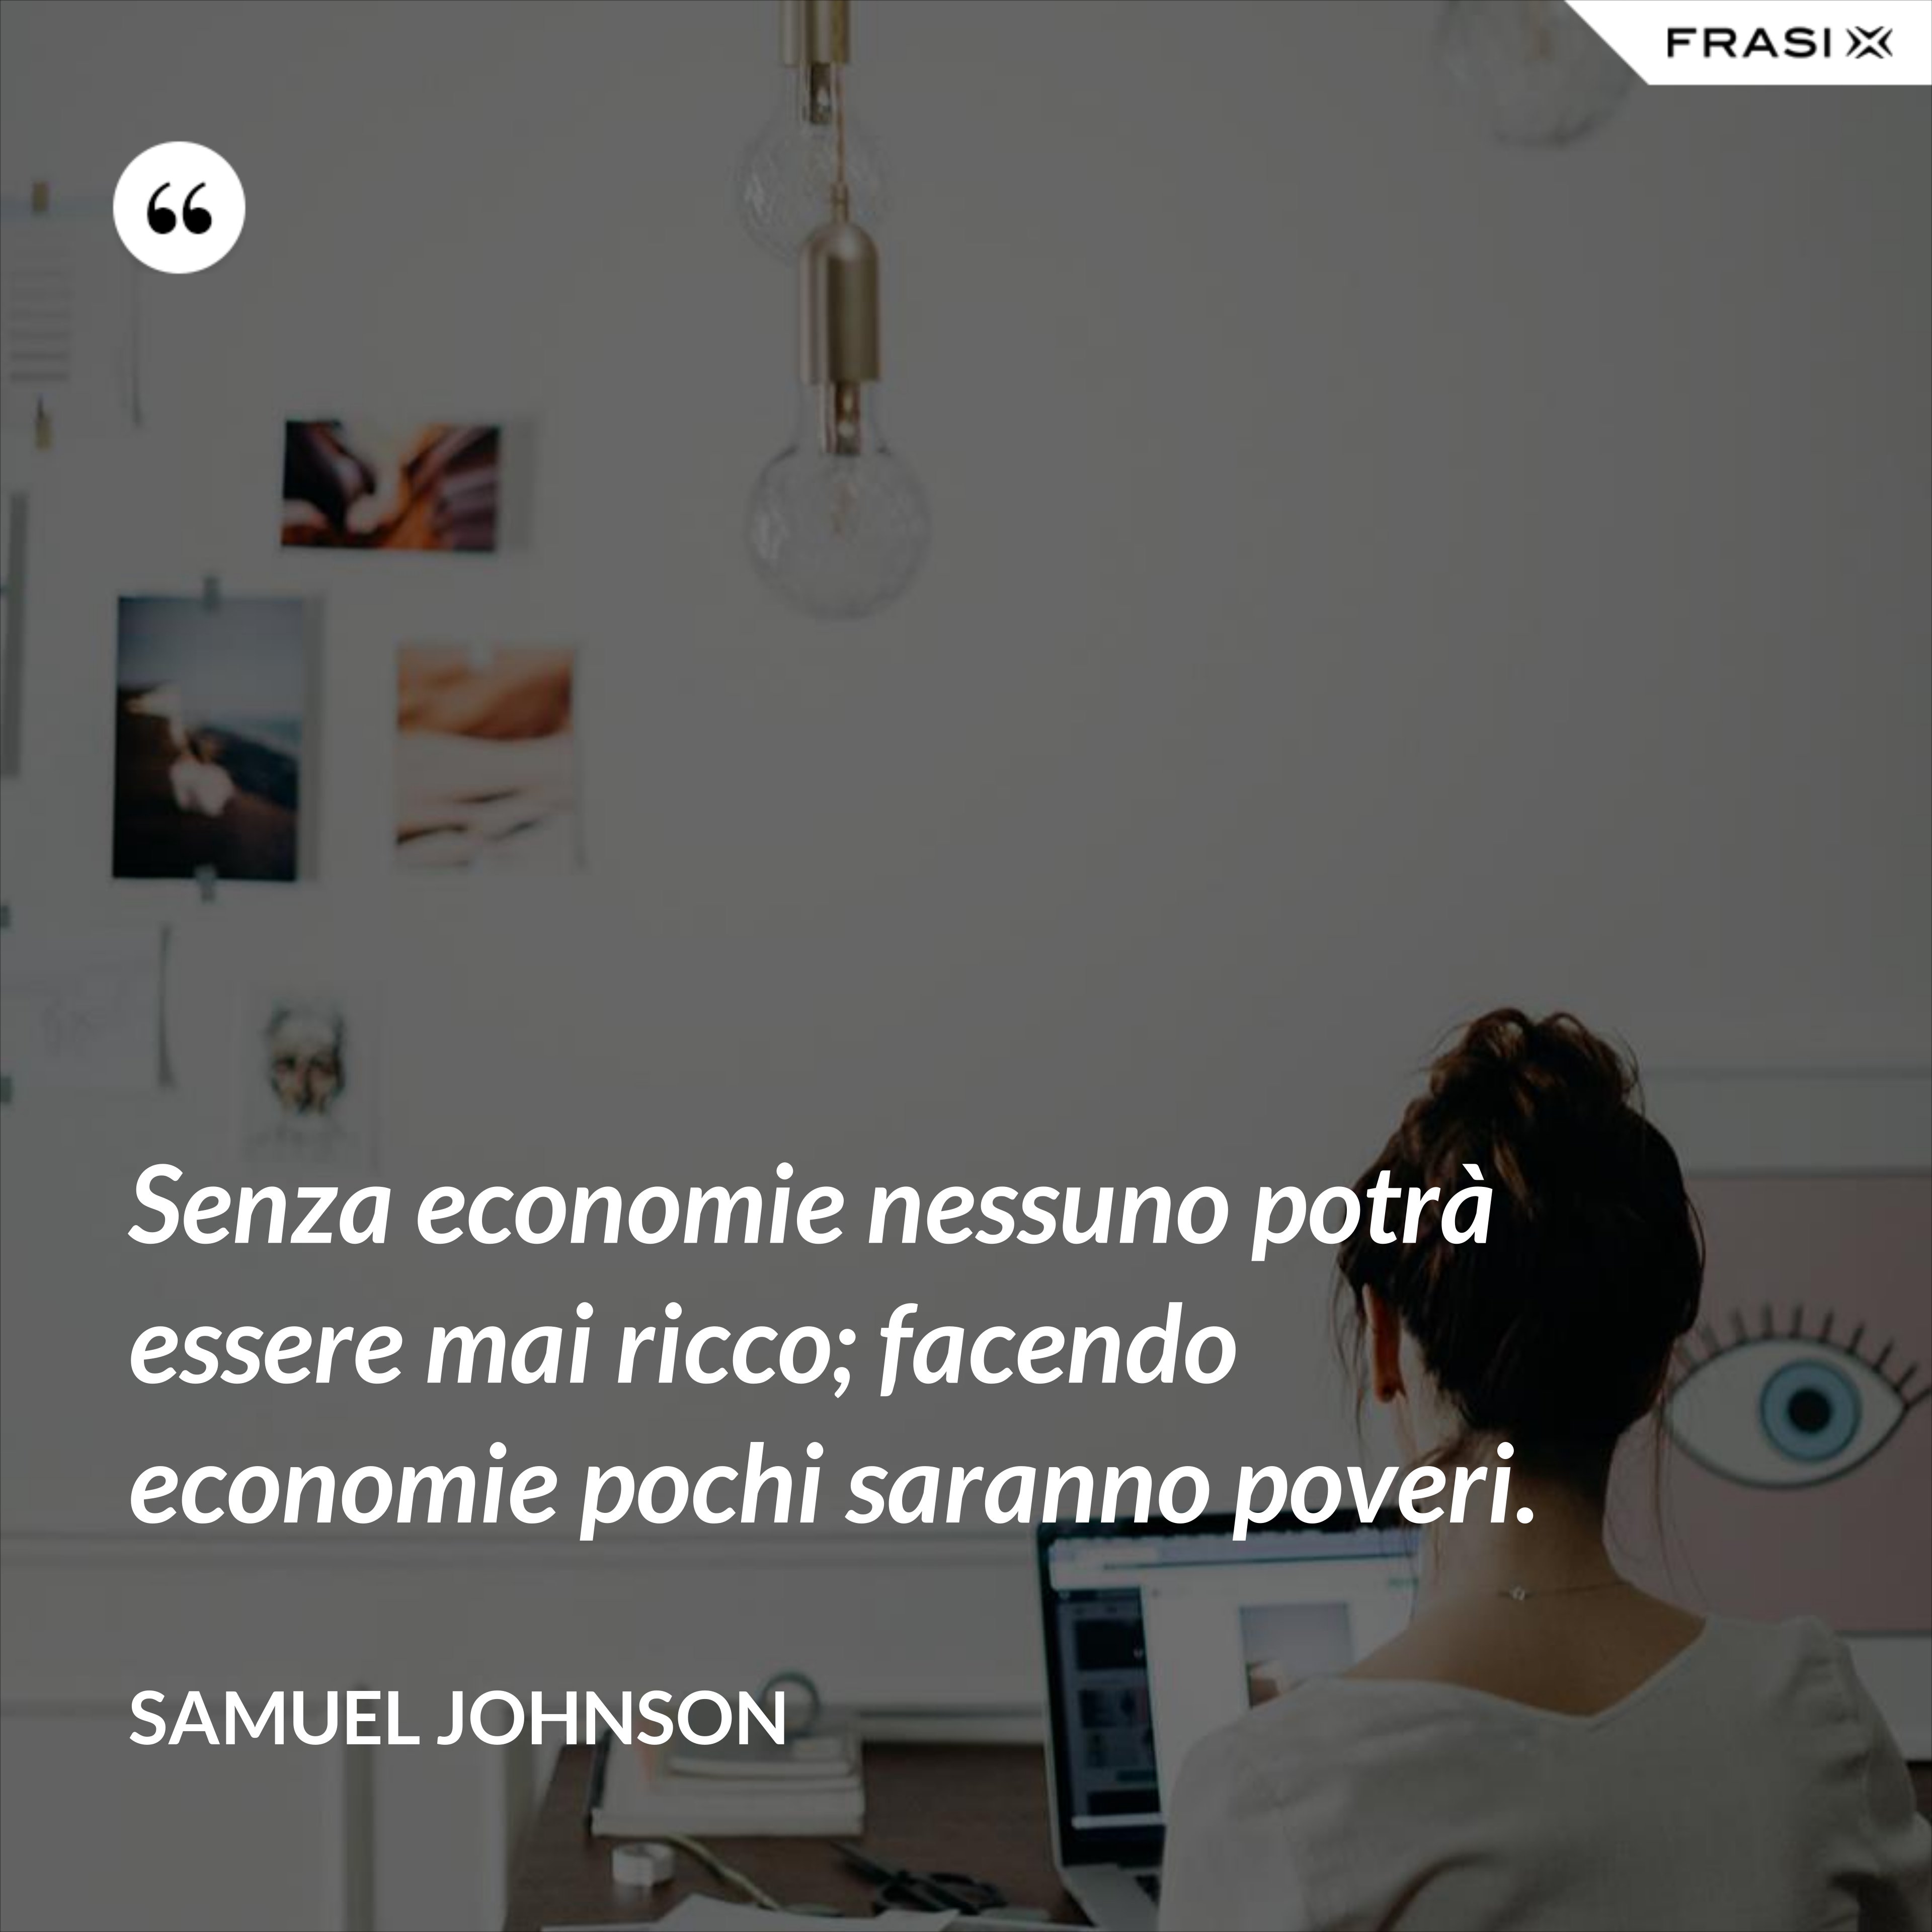 Senza economie nessuno potrà essere mai ricco; facendo economie pochi saranno poveri. - Samuel Johnson